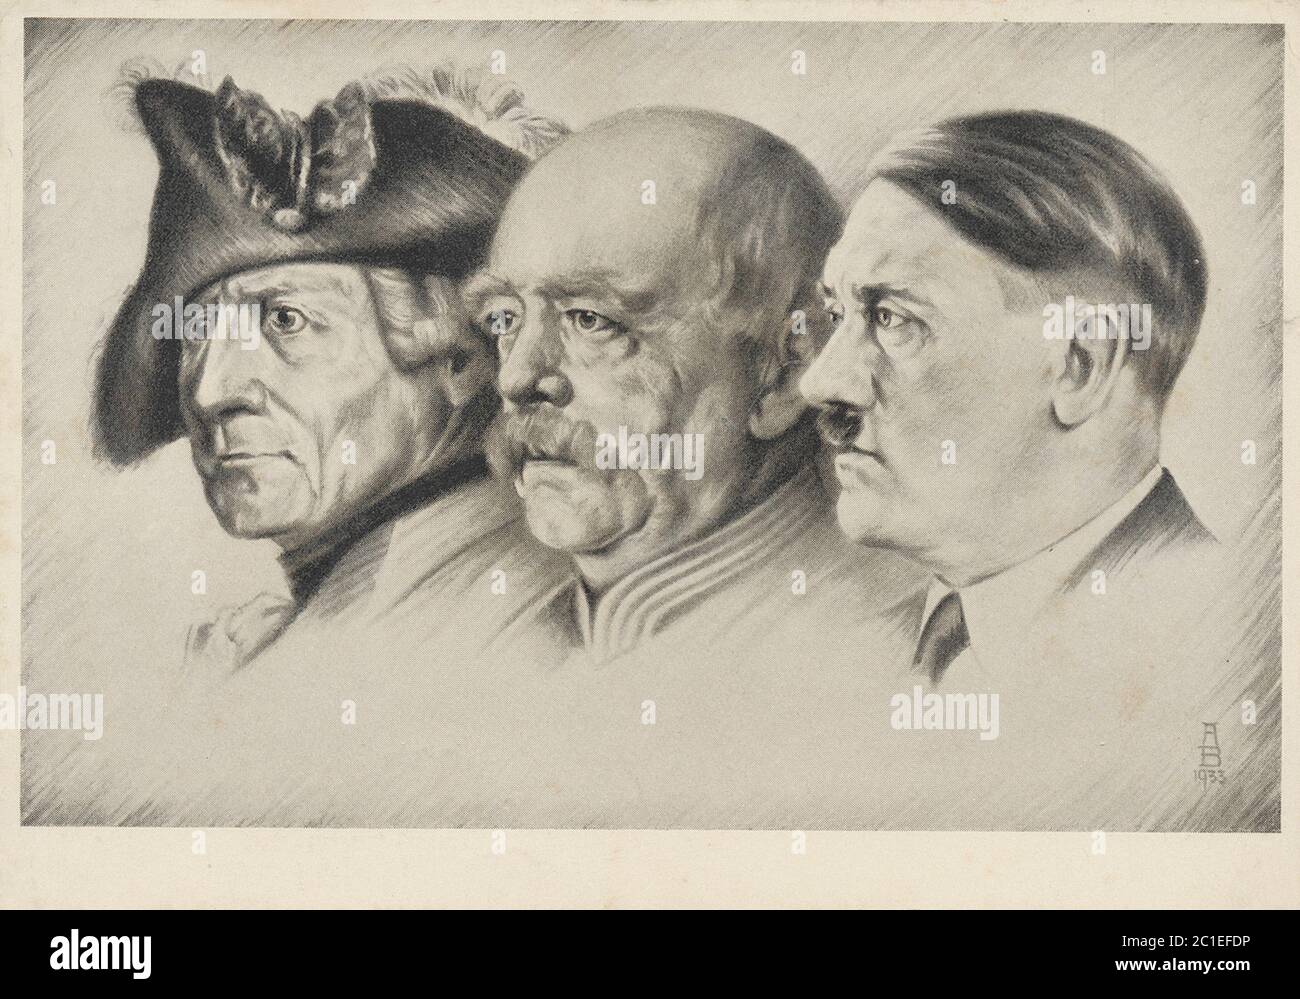 Carte postale de la propaande allemande : « un de l'époque » Friedrich le Grand, Bismarck le chancelier de fer et Hitler le chancelier du peuple. 1933 Banque D'Images